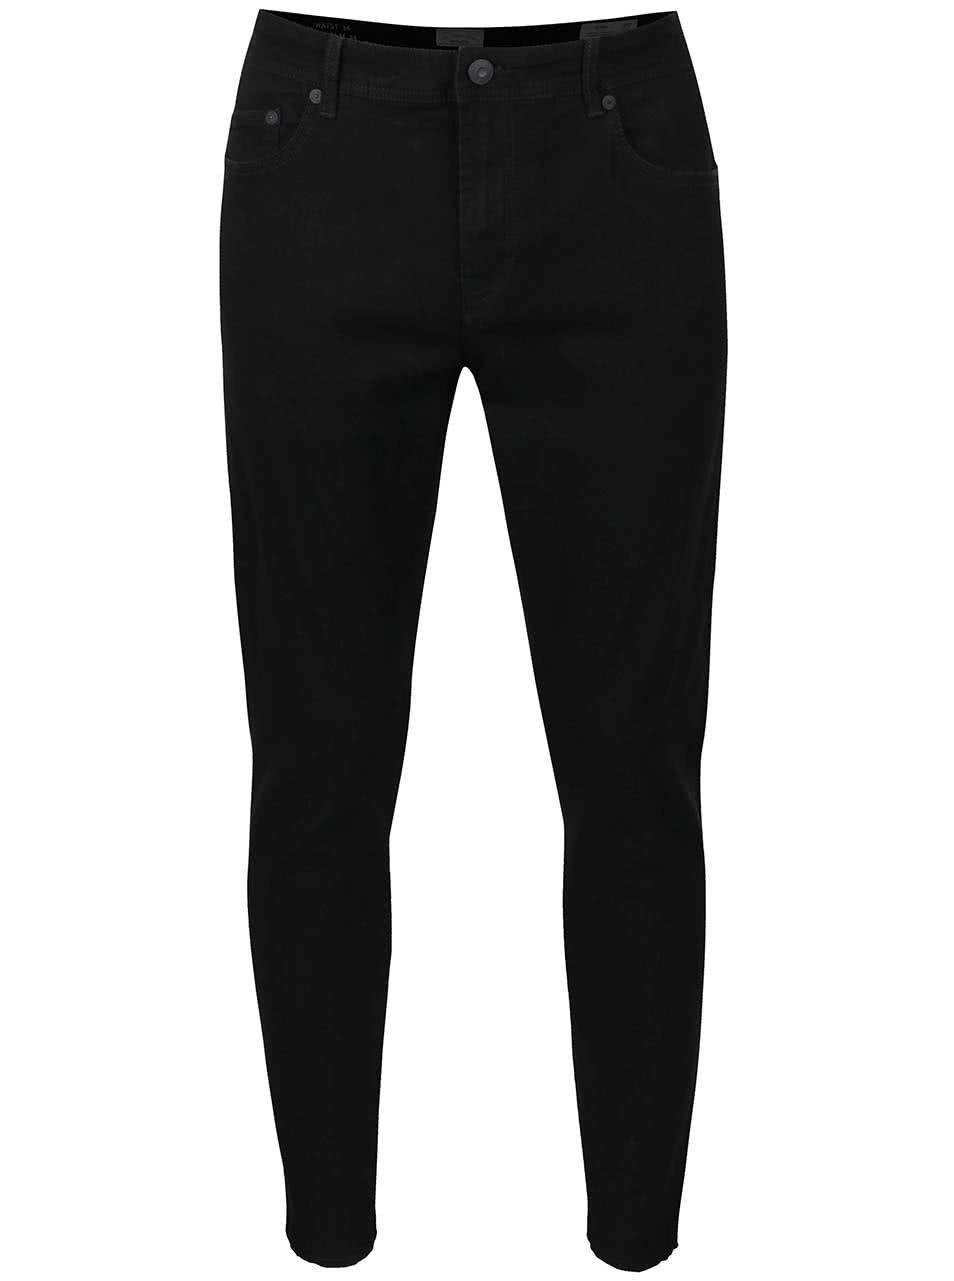 Černé skinny džíny s roztřepenými nohavicemi ONLY & SONS Warp